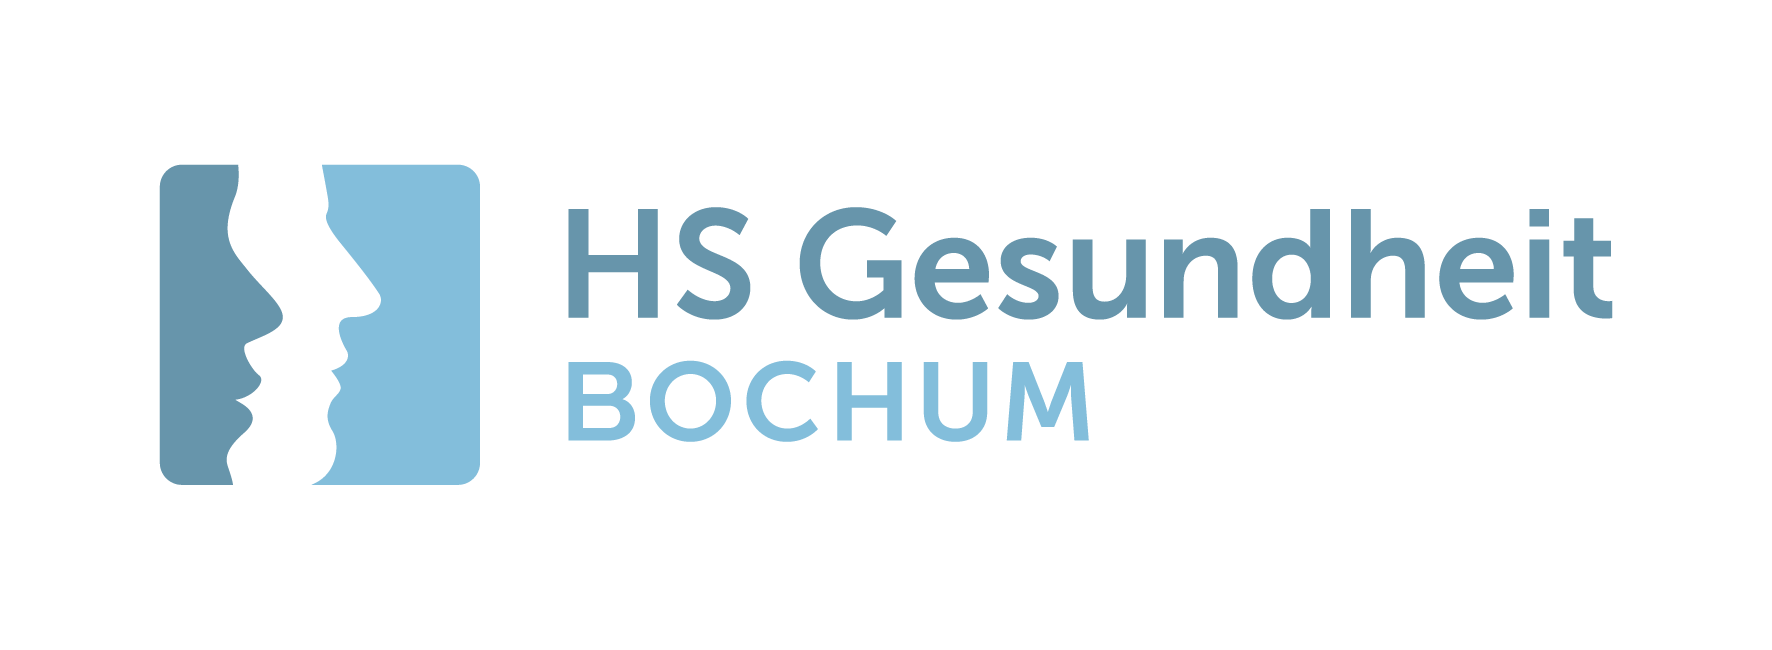 Logo: Hochschule für Gesundheit